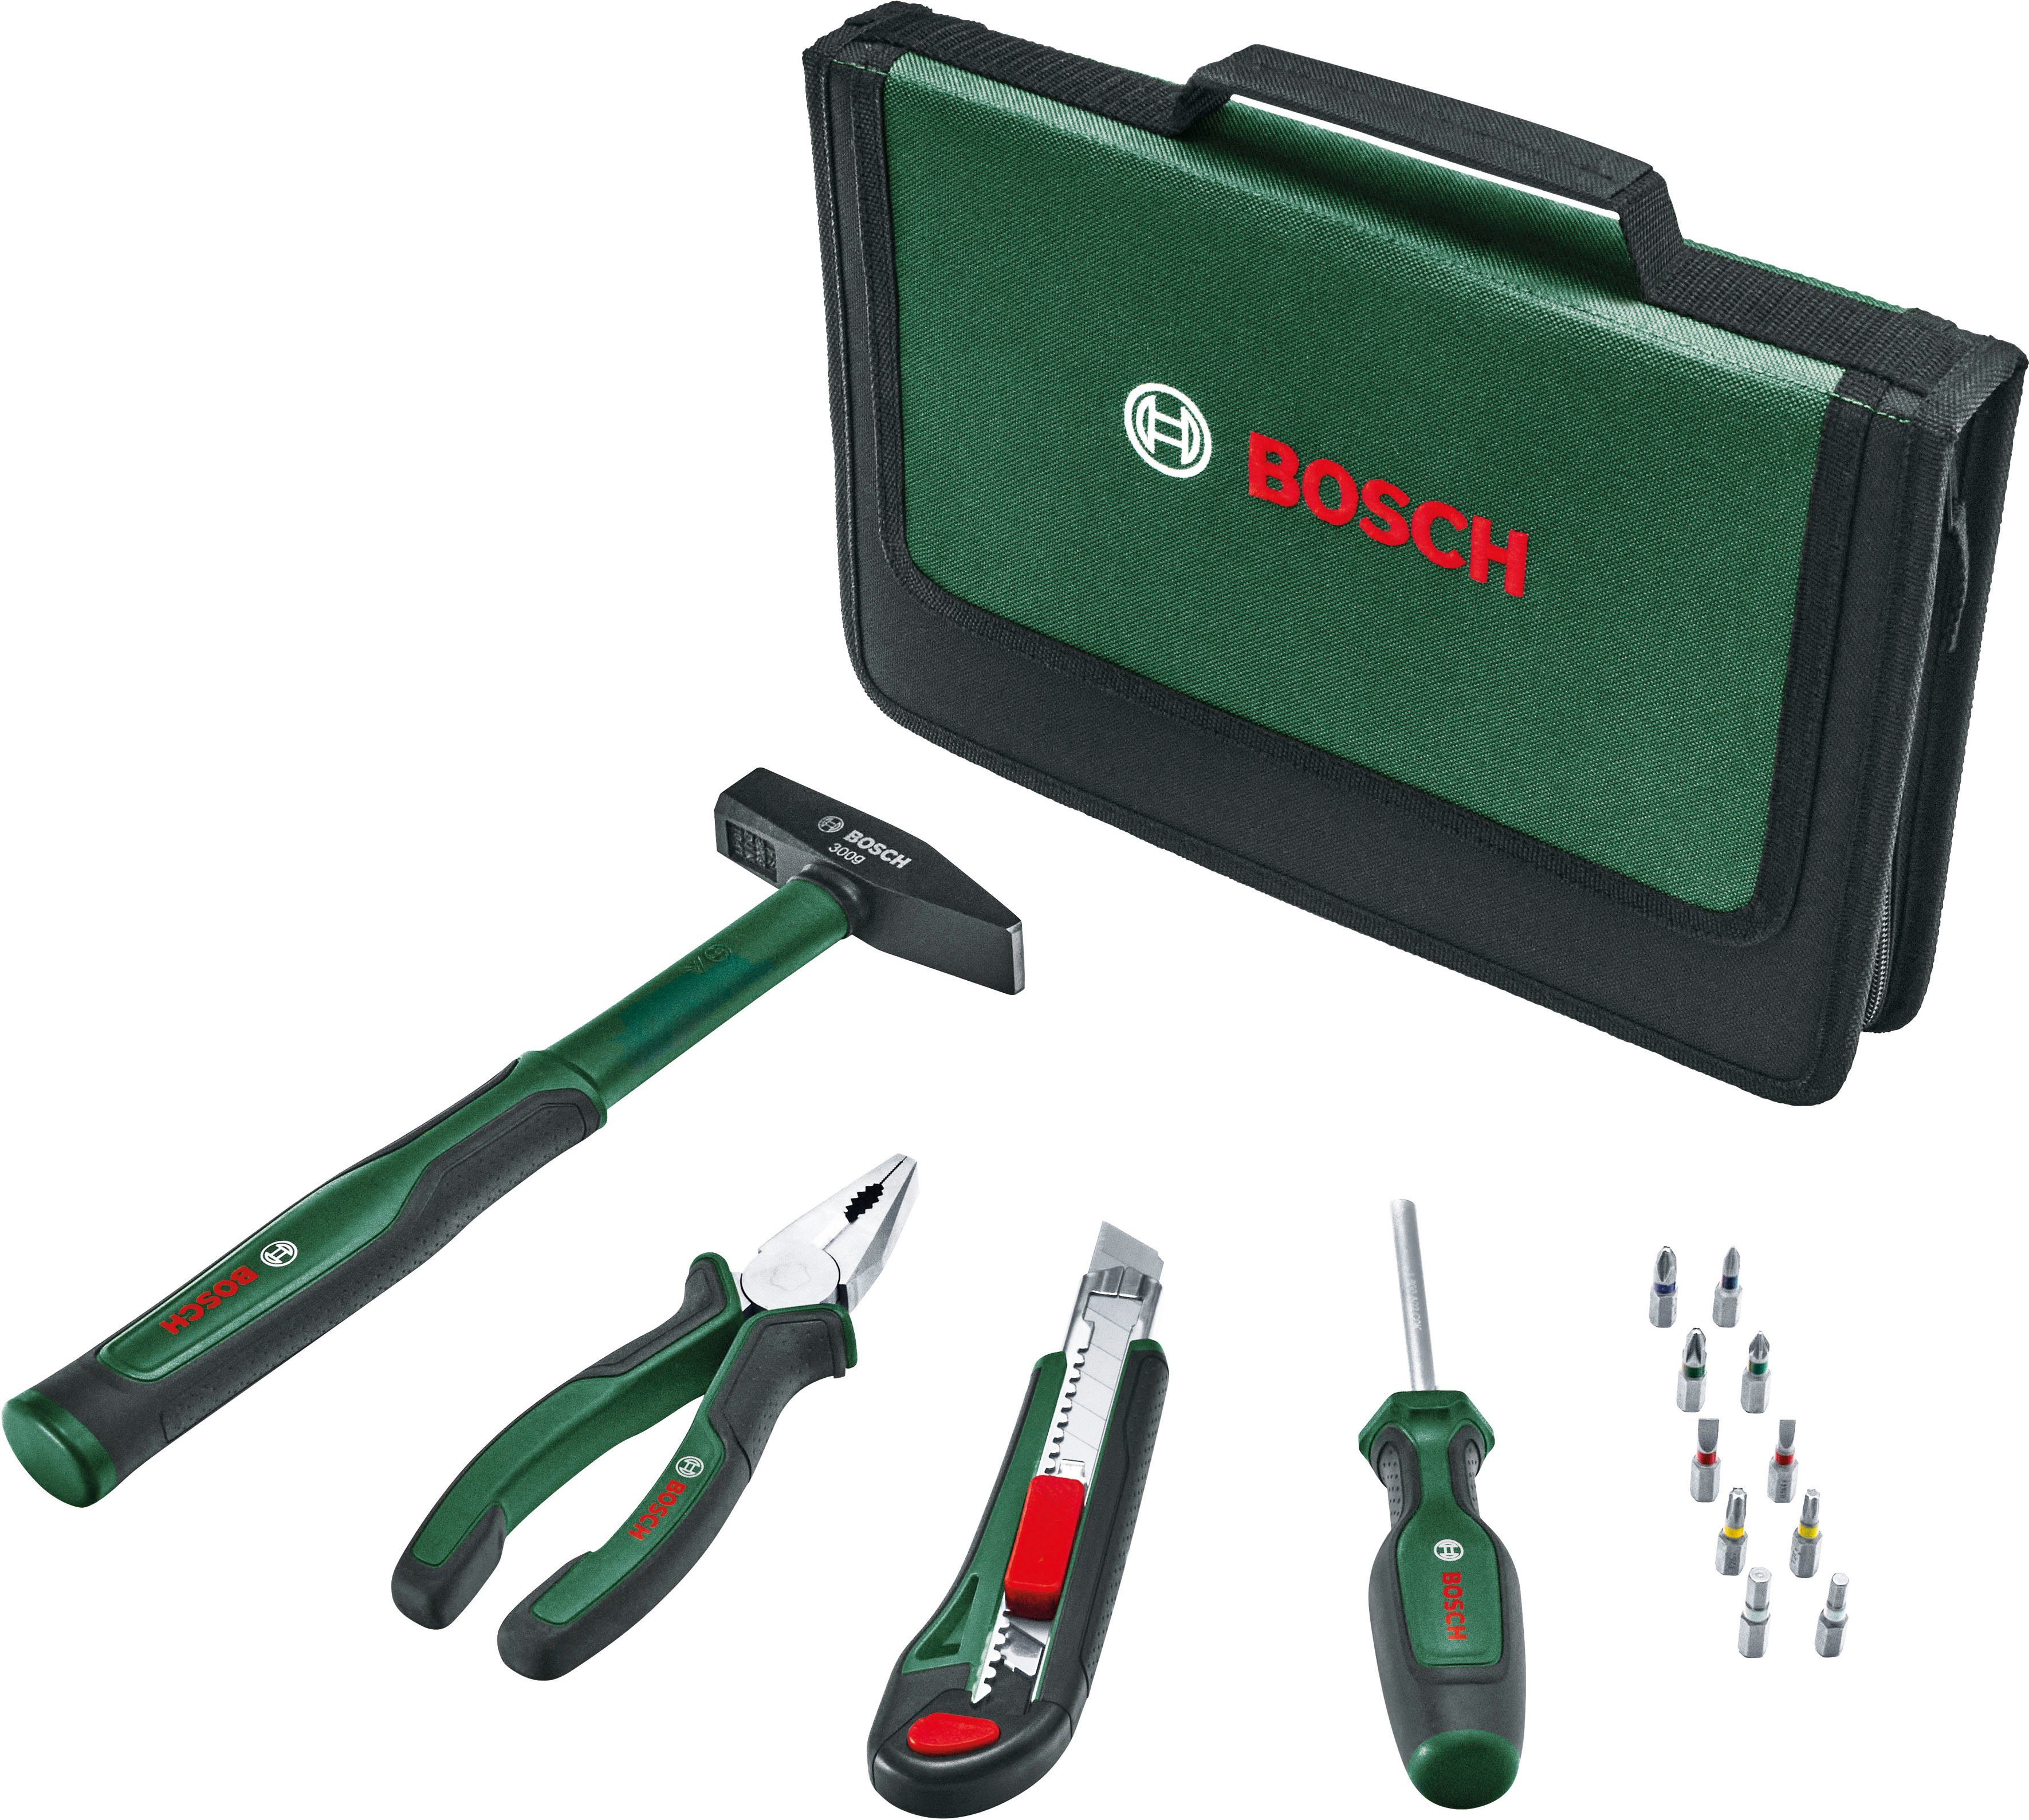 Easy Starter Bosch Werkzeugset Garden 14-teilig Home Set, Werkzeug &